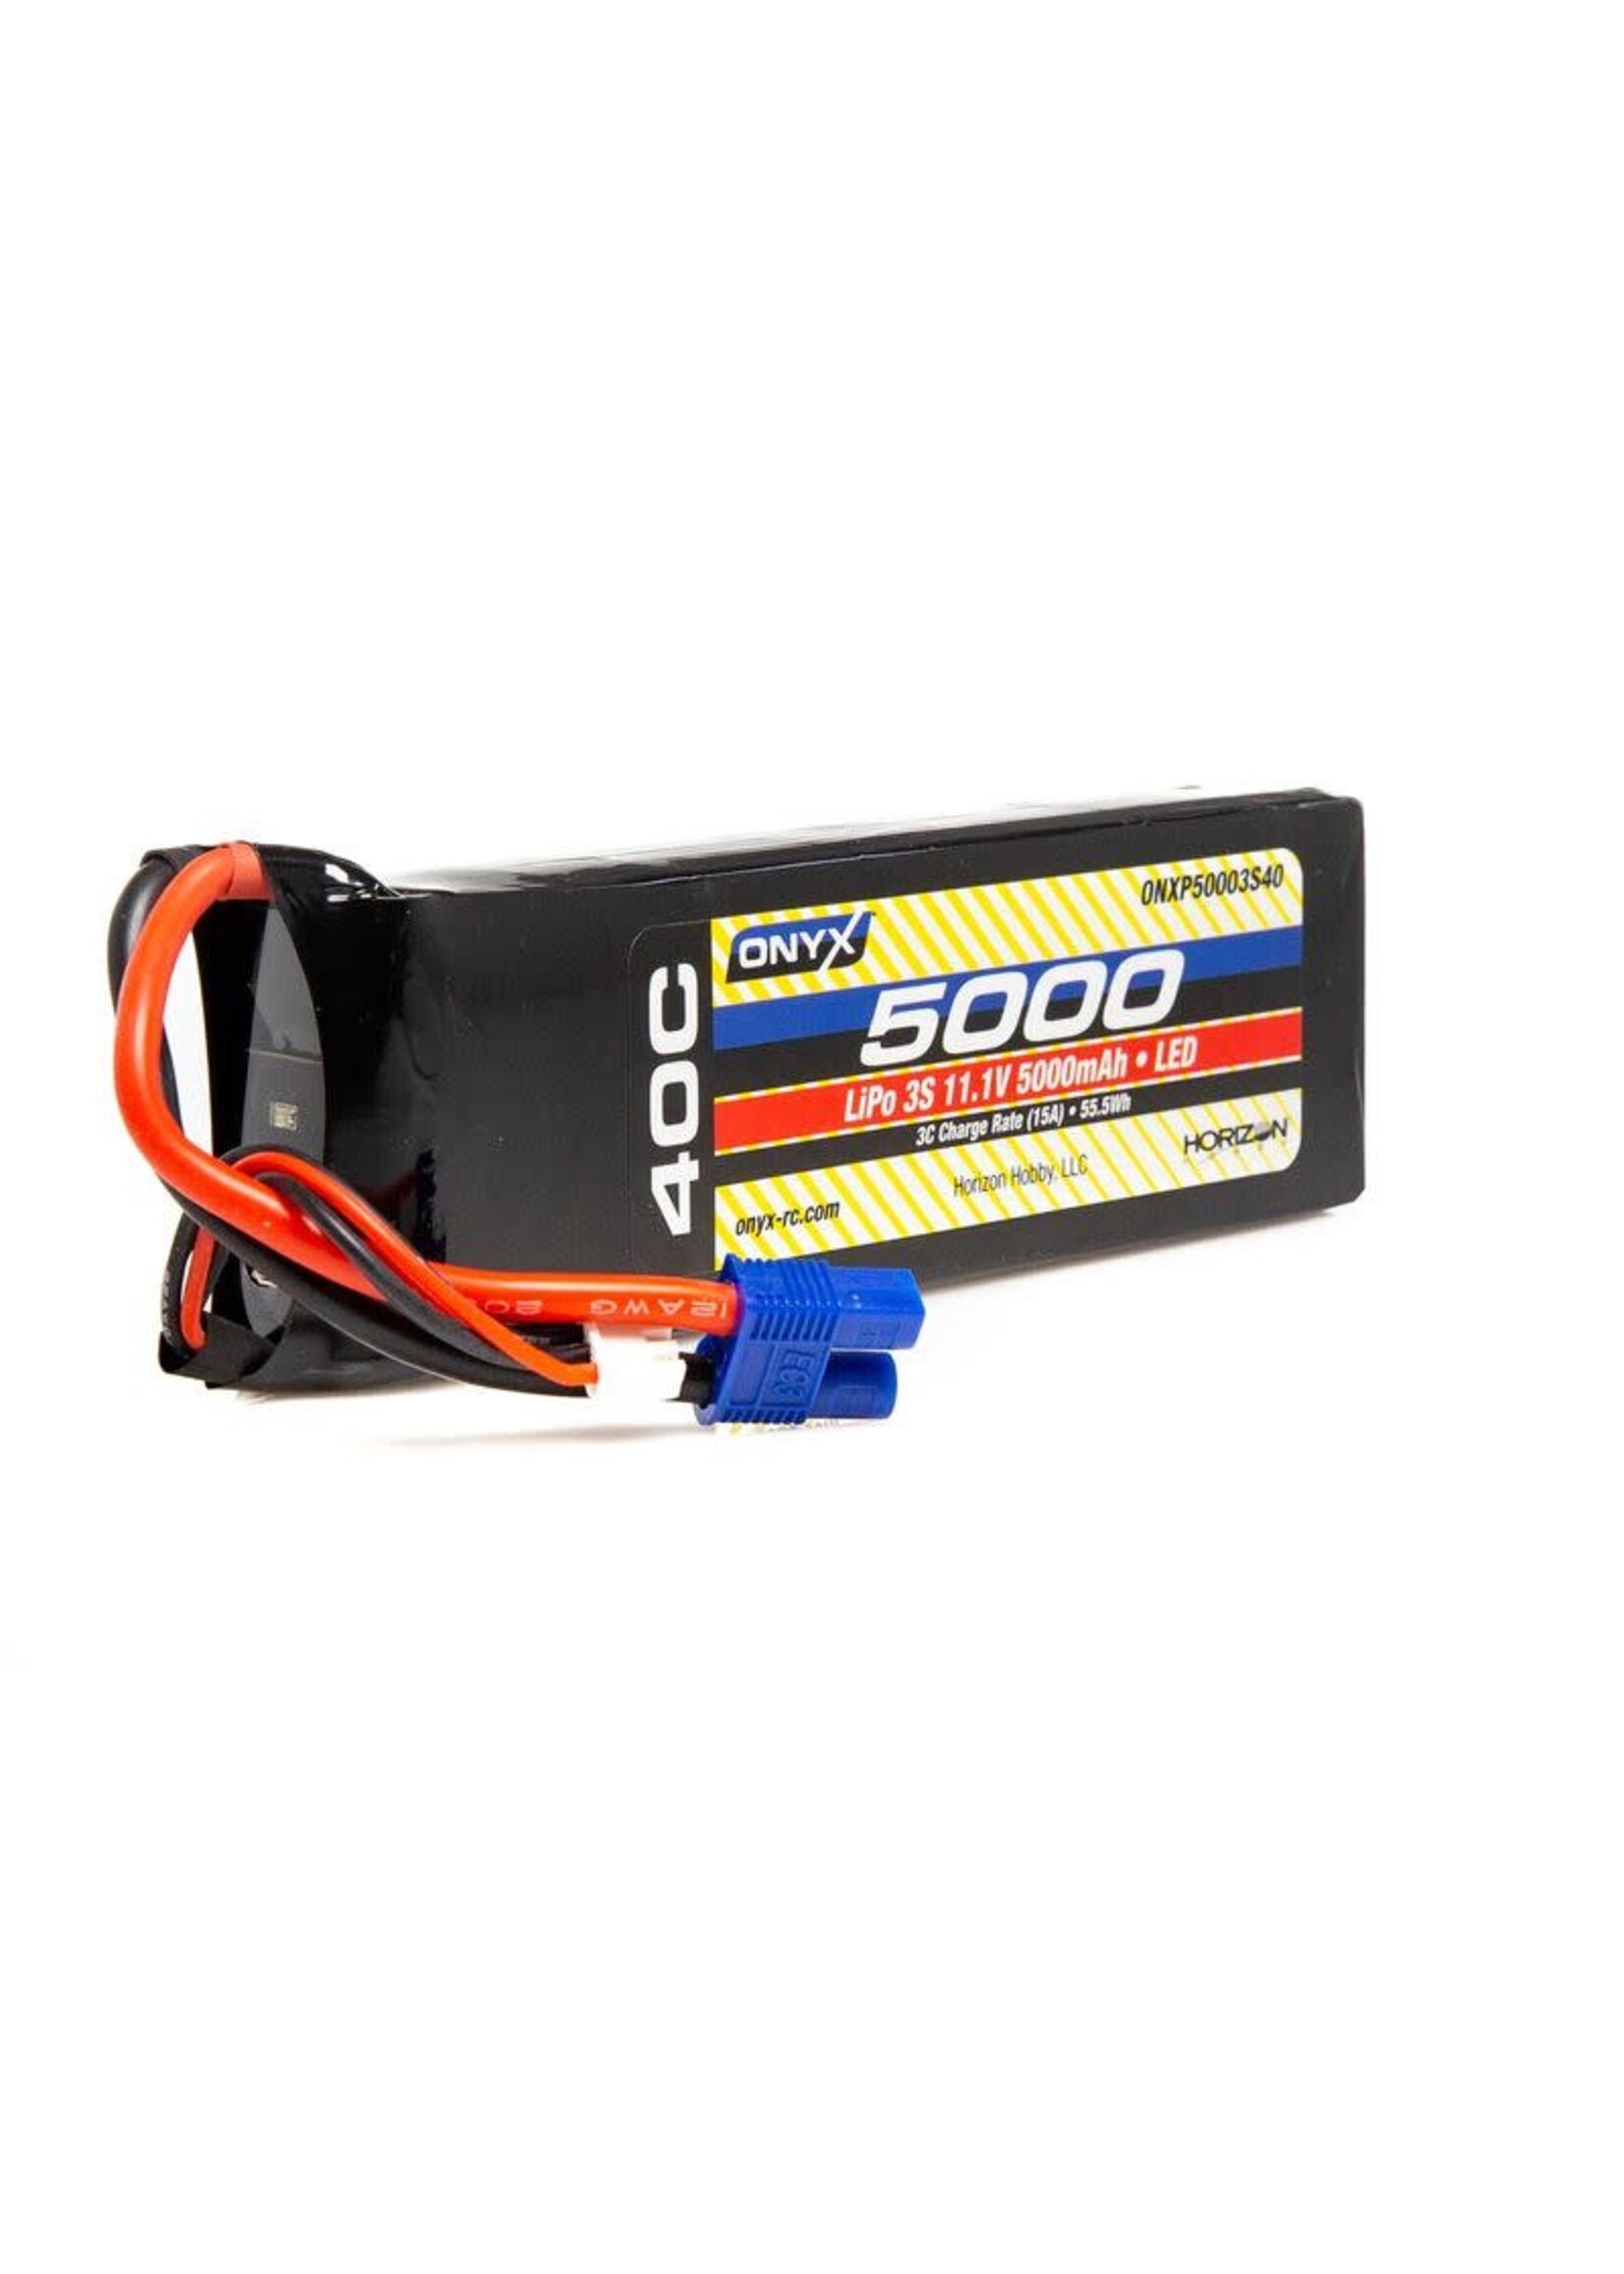 horizon hobby ONYX 11.1V 5000mAh 3S 40C LiPo Battery: EC3